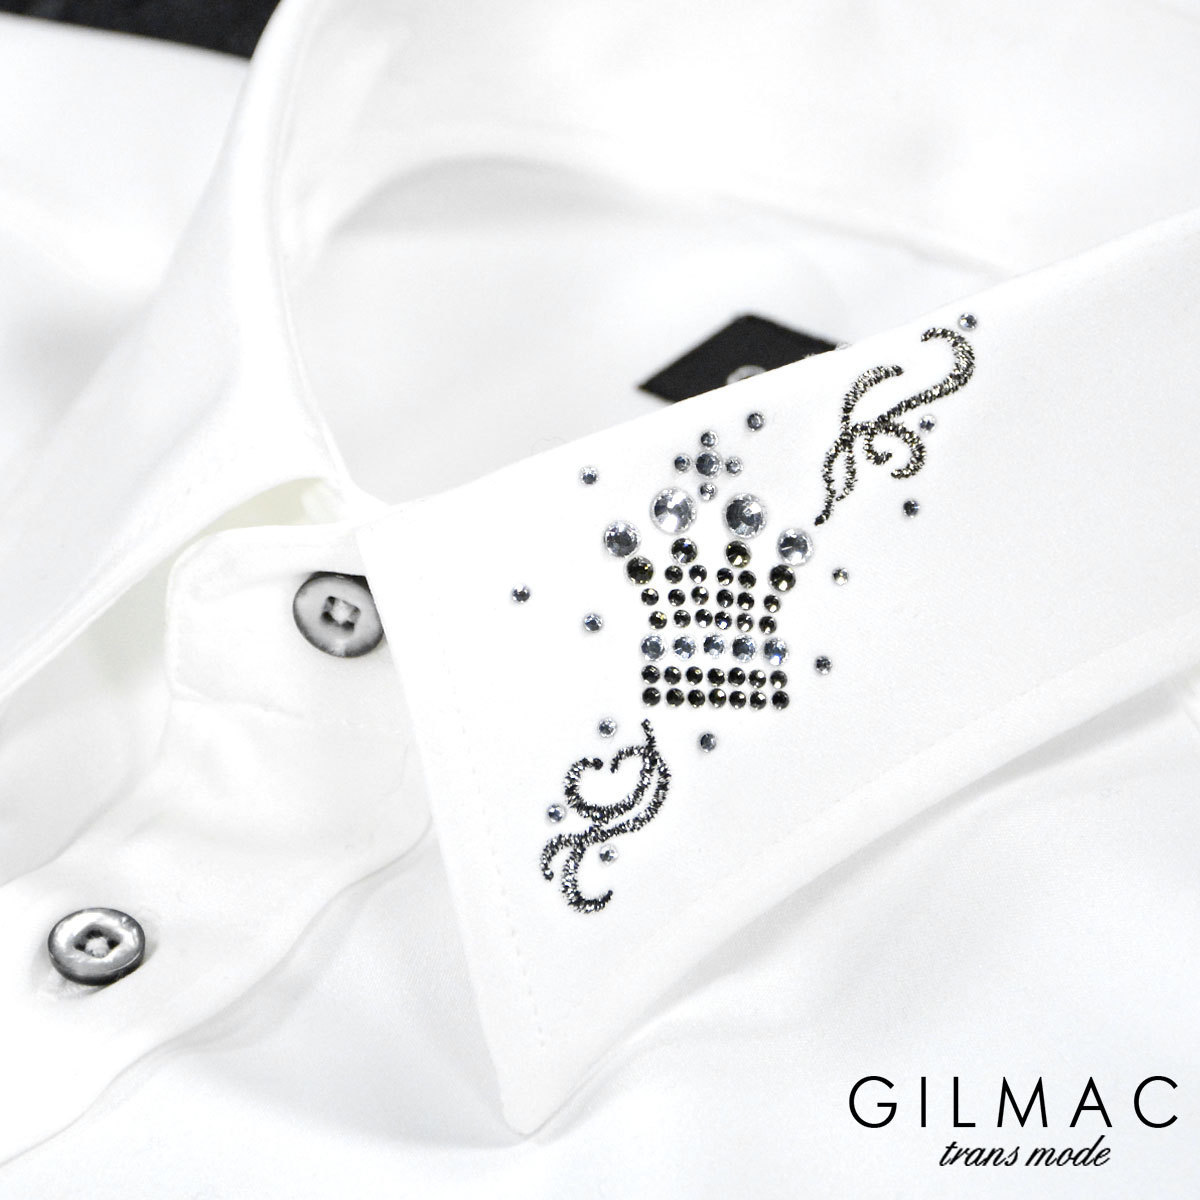 売れ筋介護用品も！ 長袖サテンドレスシャツ 襟ラインストーン クラウン王冠 イタリアンカラー GILMAC 6#36741-1 メンズ(ホワイト白) スキッパー S Sサイズ